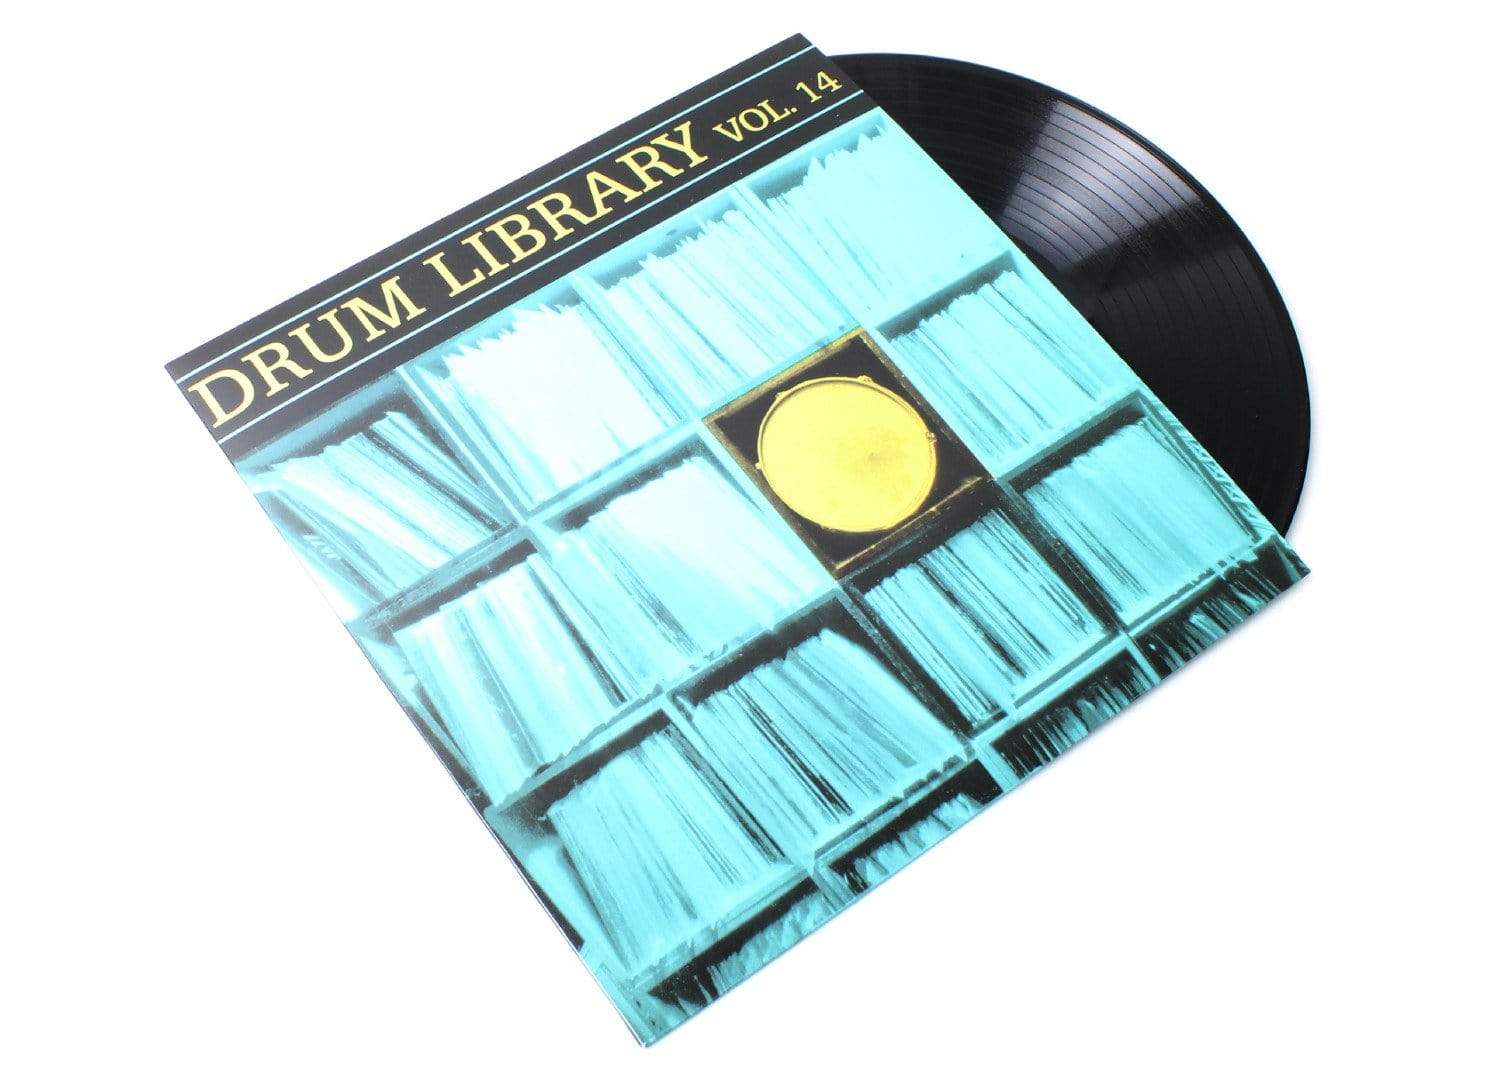 drum library vol 1 zip bags